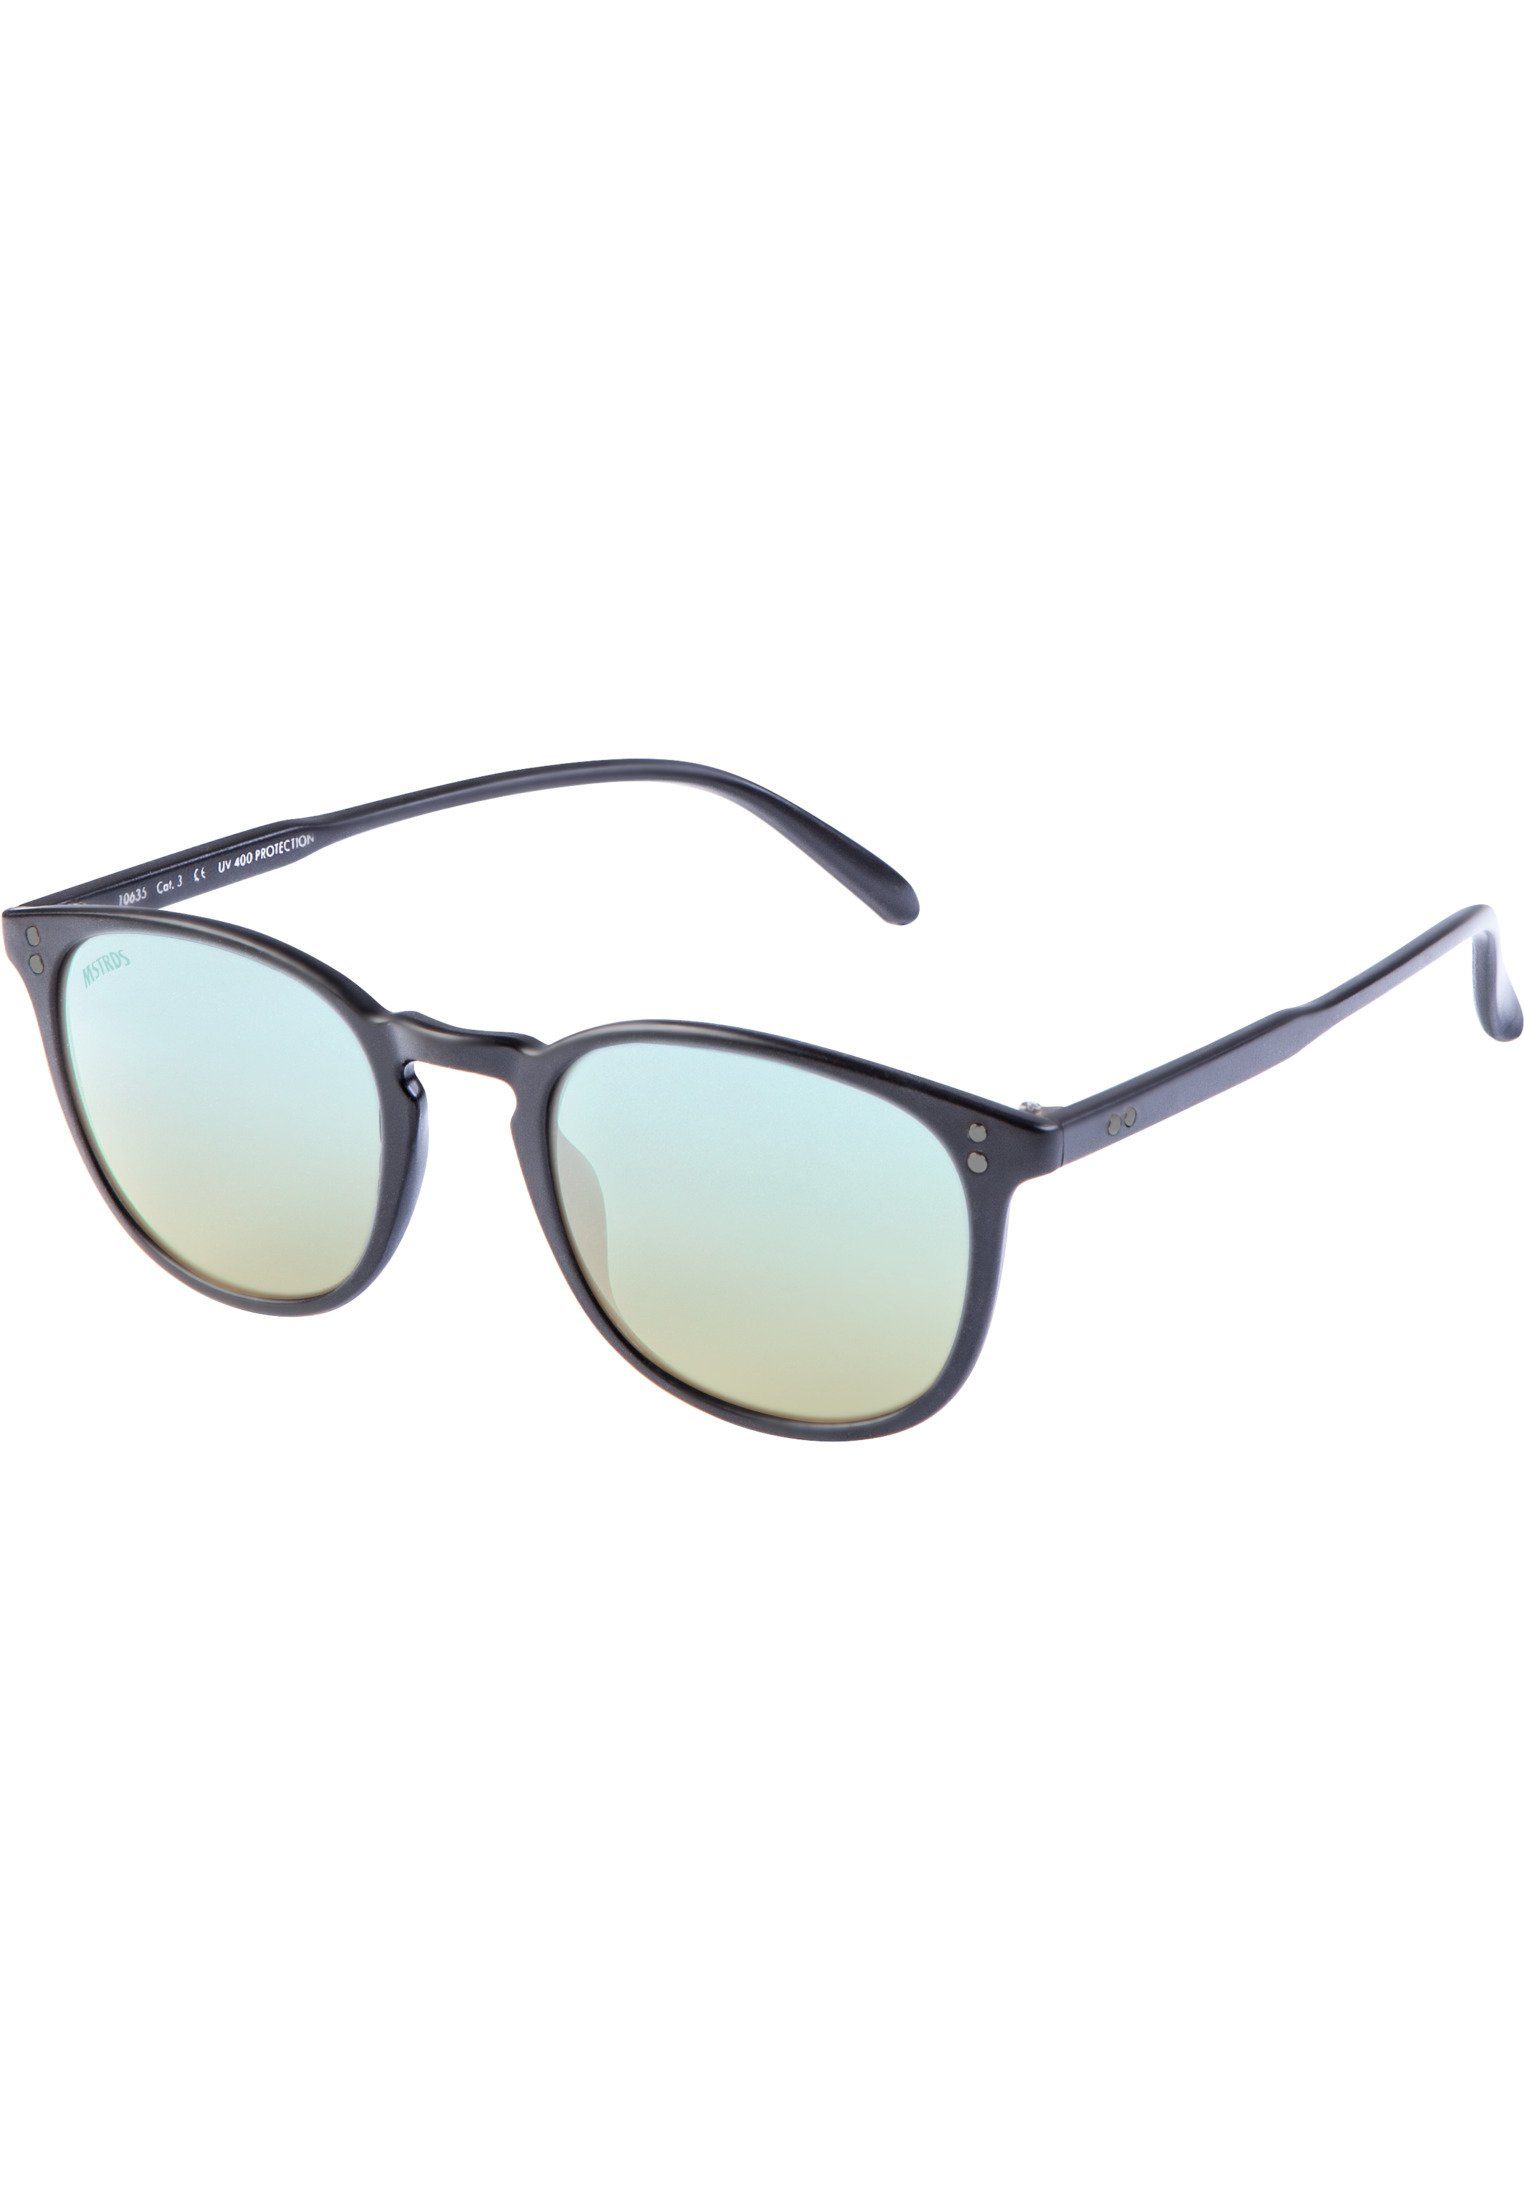 MSTRDS Sonnenbrille Accessoires Sunglasses blk/blue Arthur